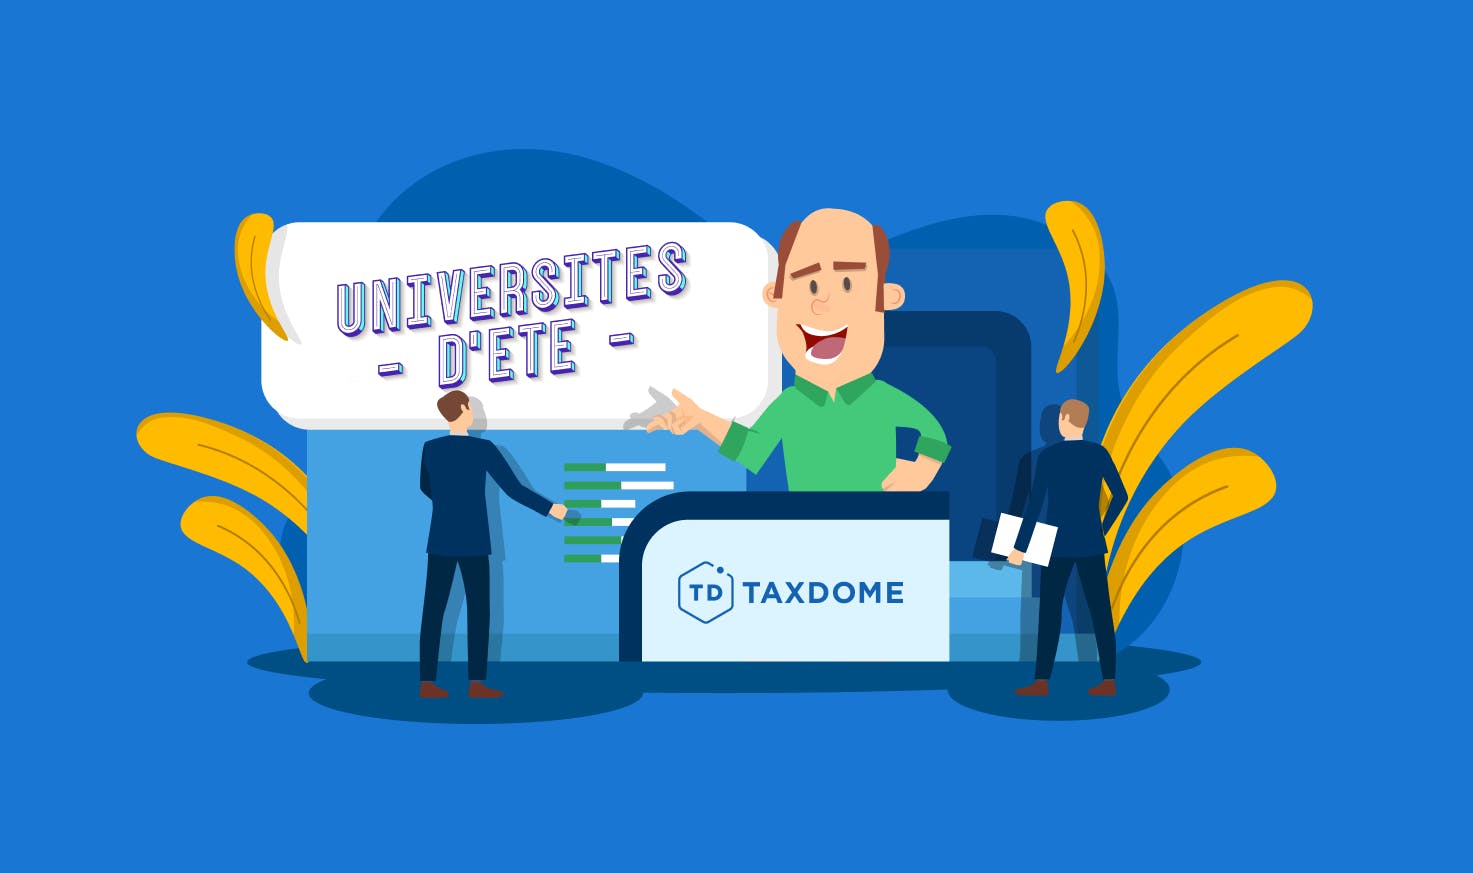 TaxDome partecipa alle “Universités d’été 2022”